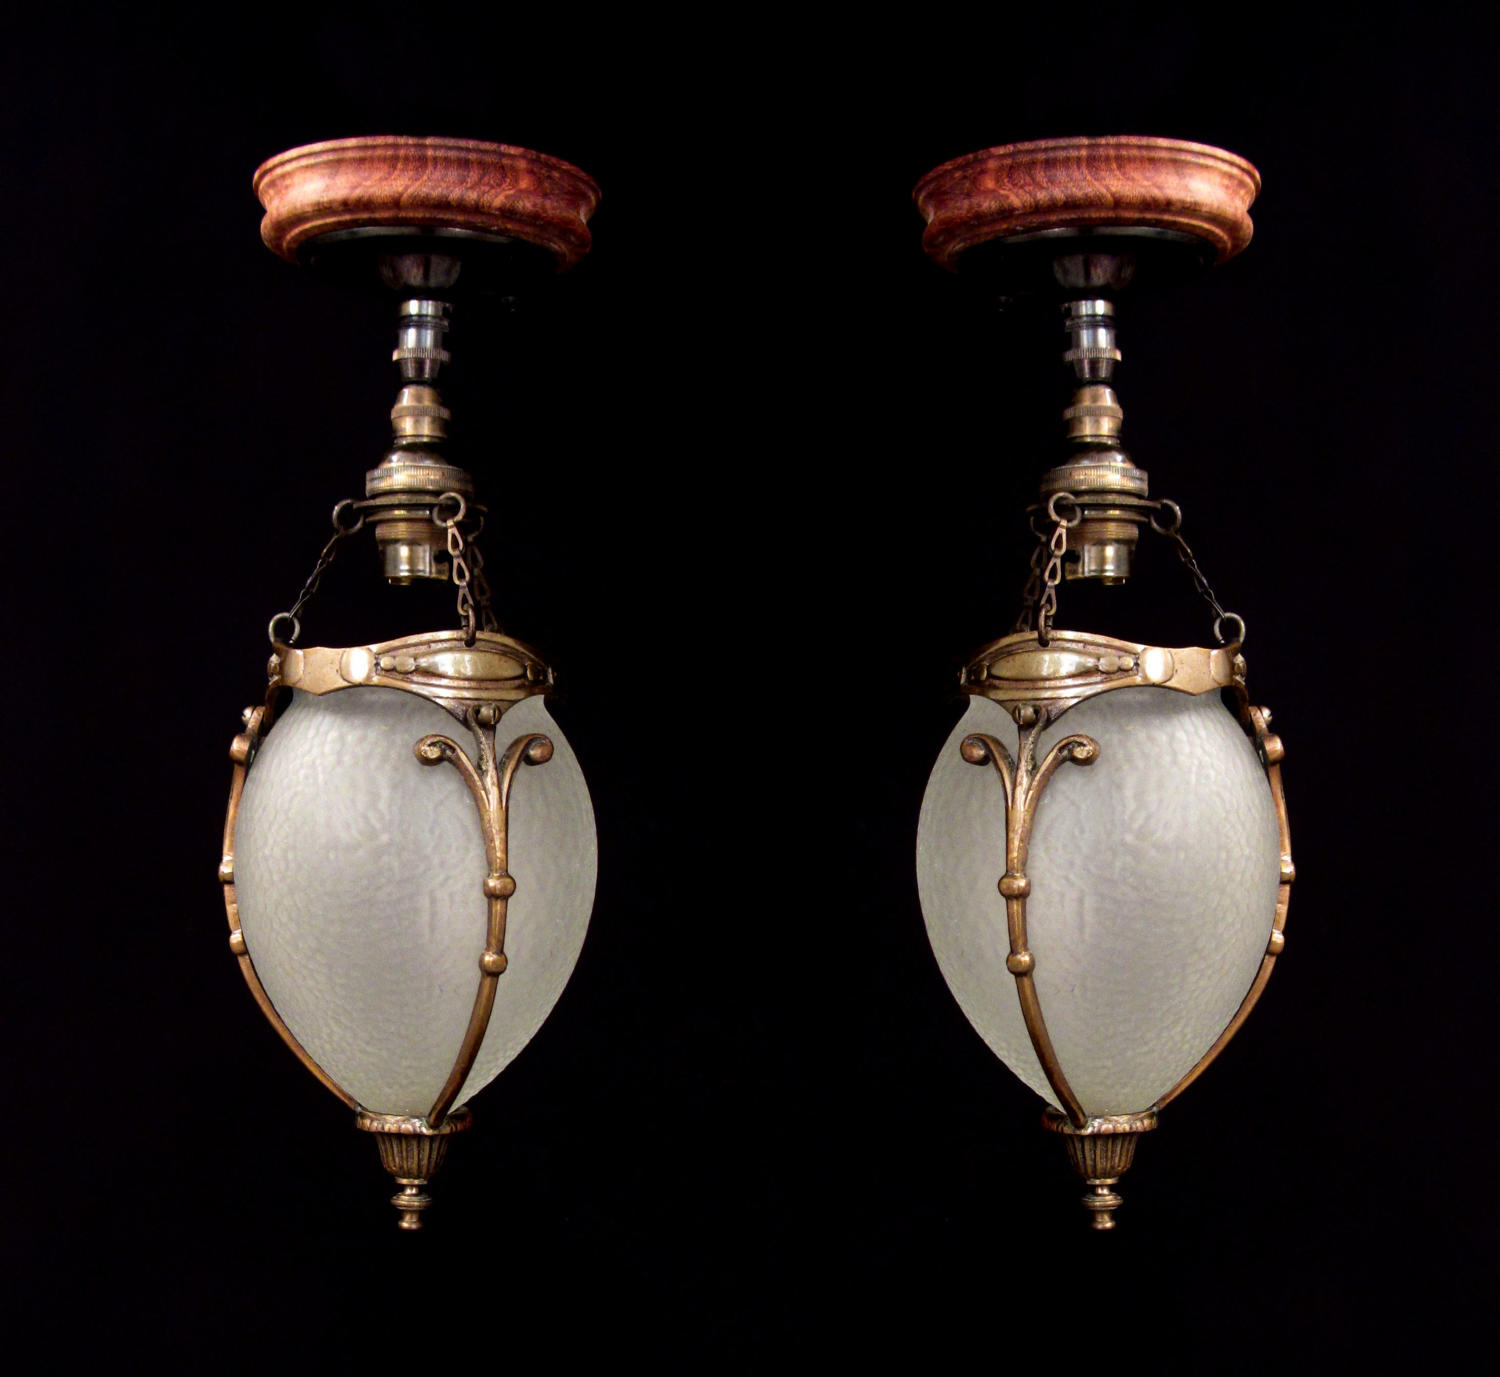 A pair of cut glass acorn lanterns